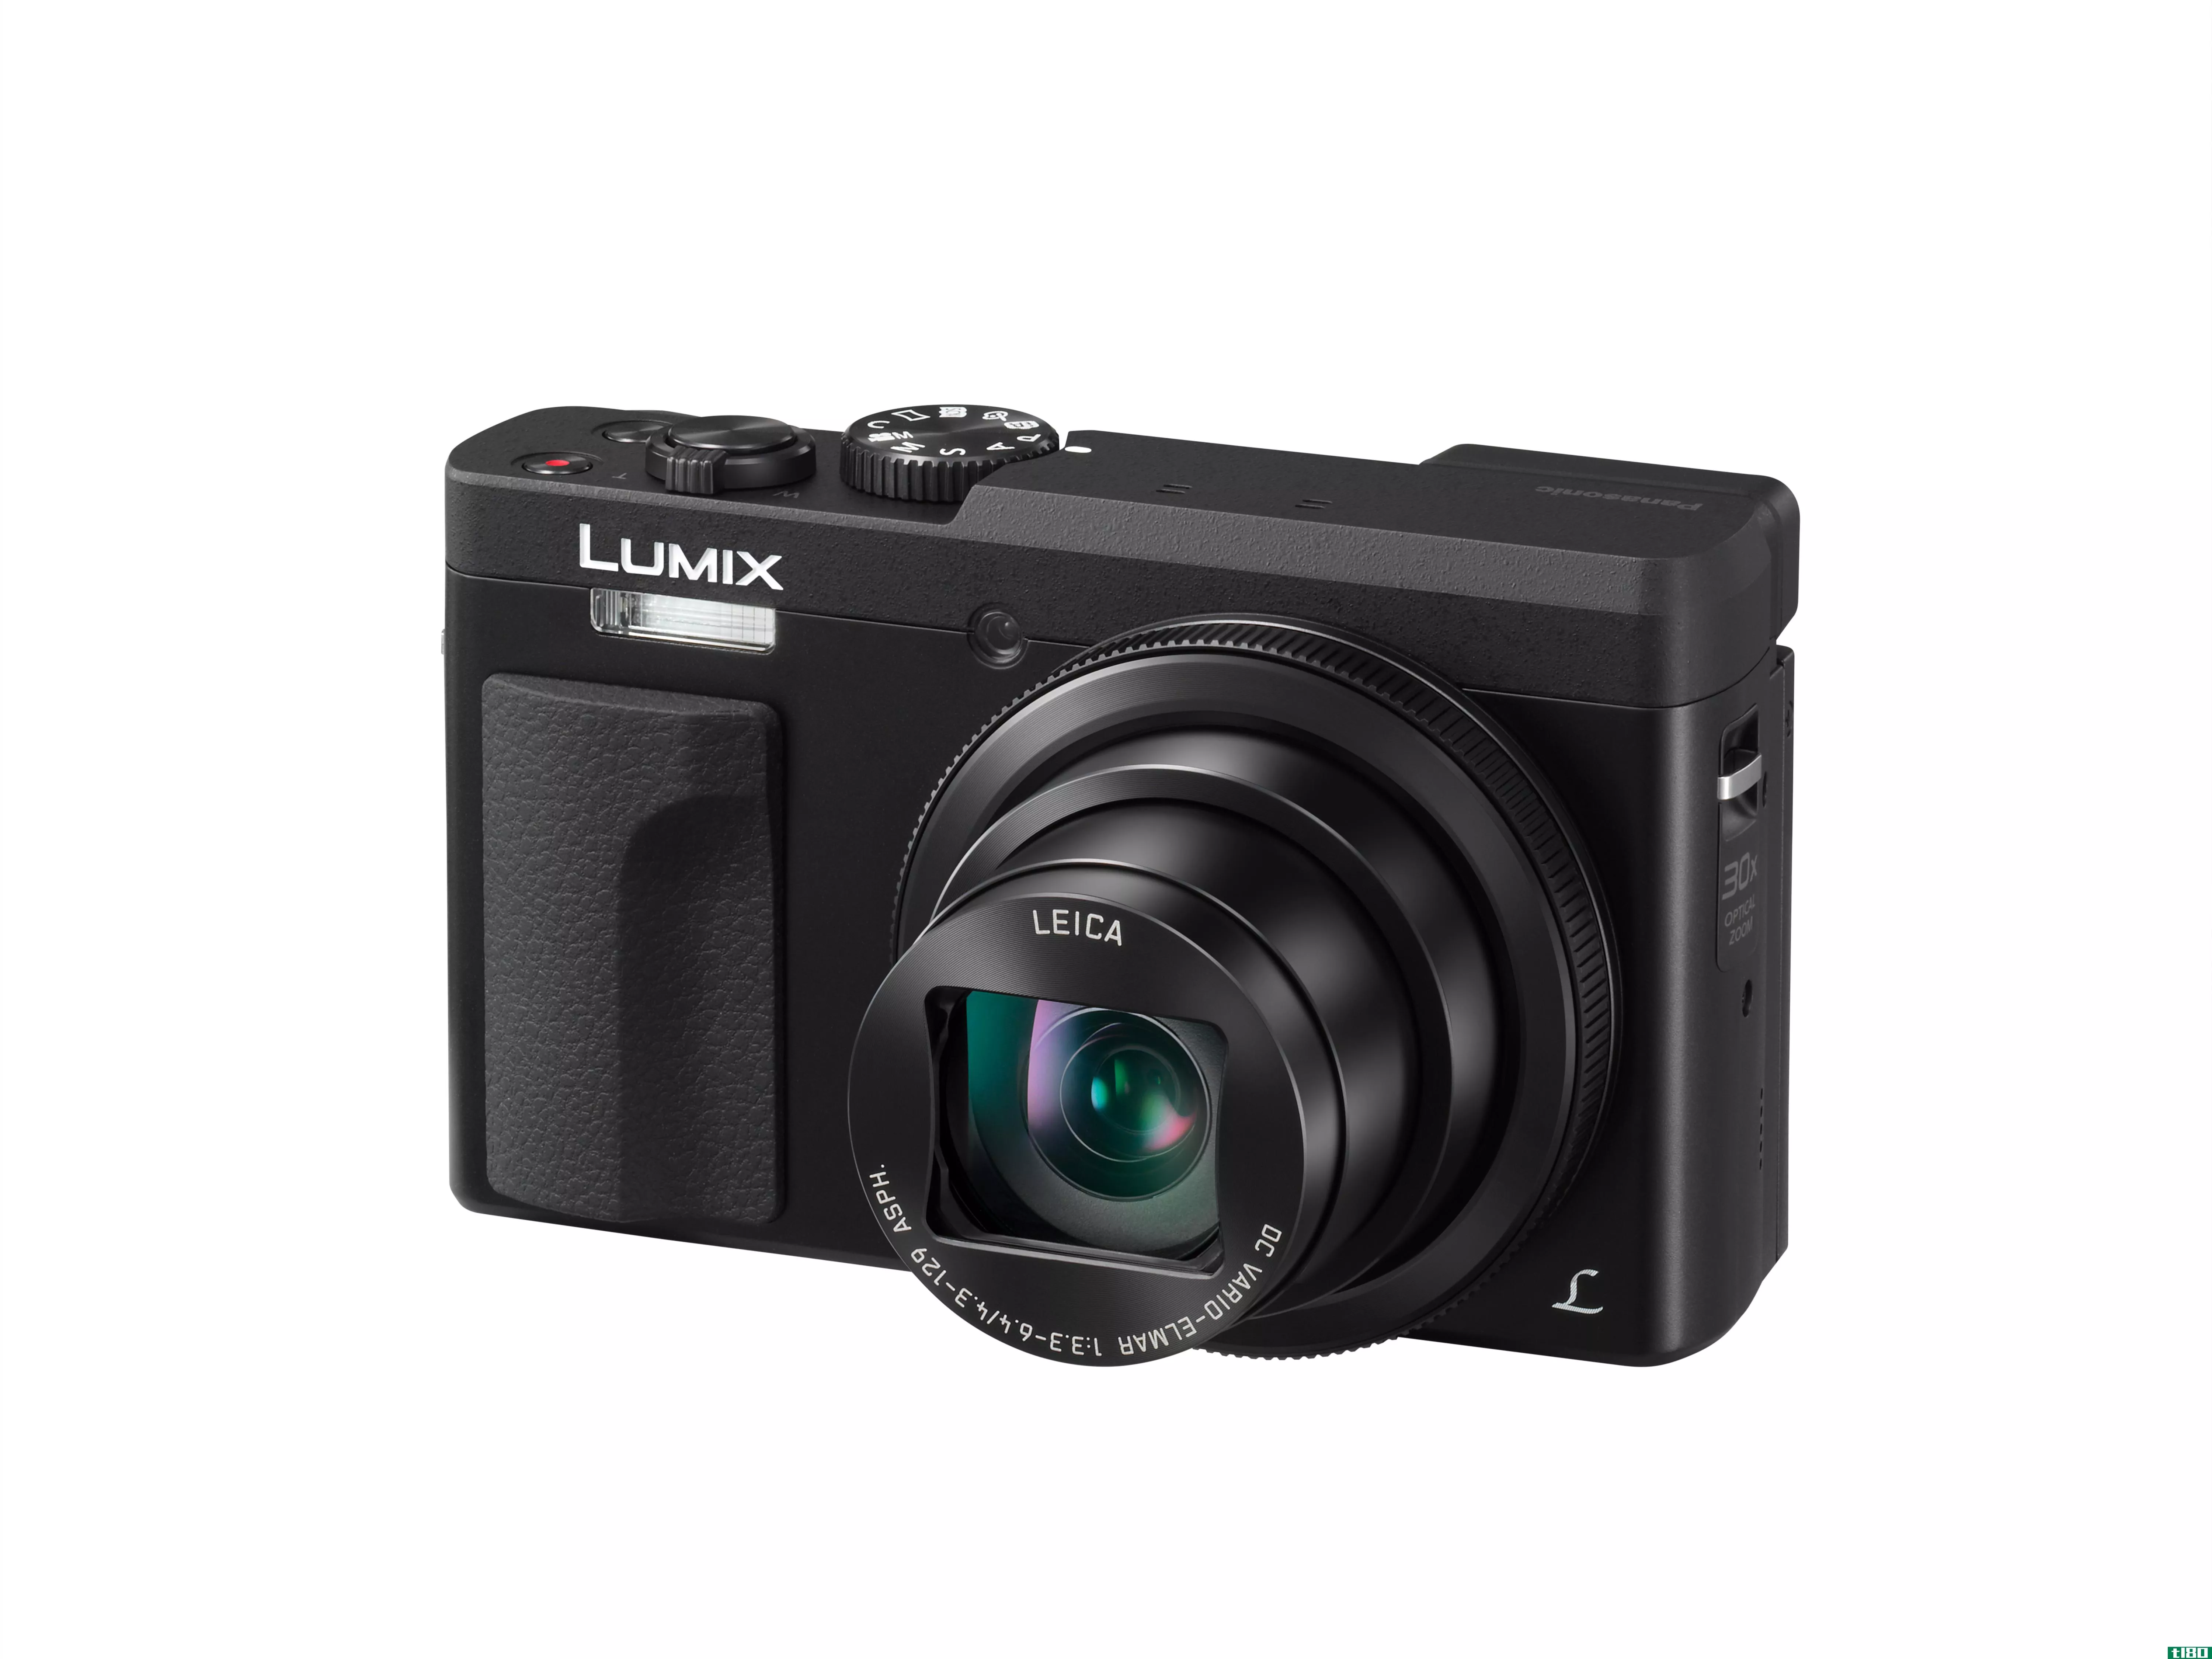 松下LumixZS70是一款稍有改进的点对点相机